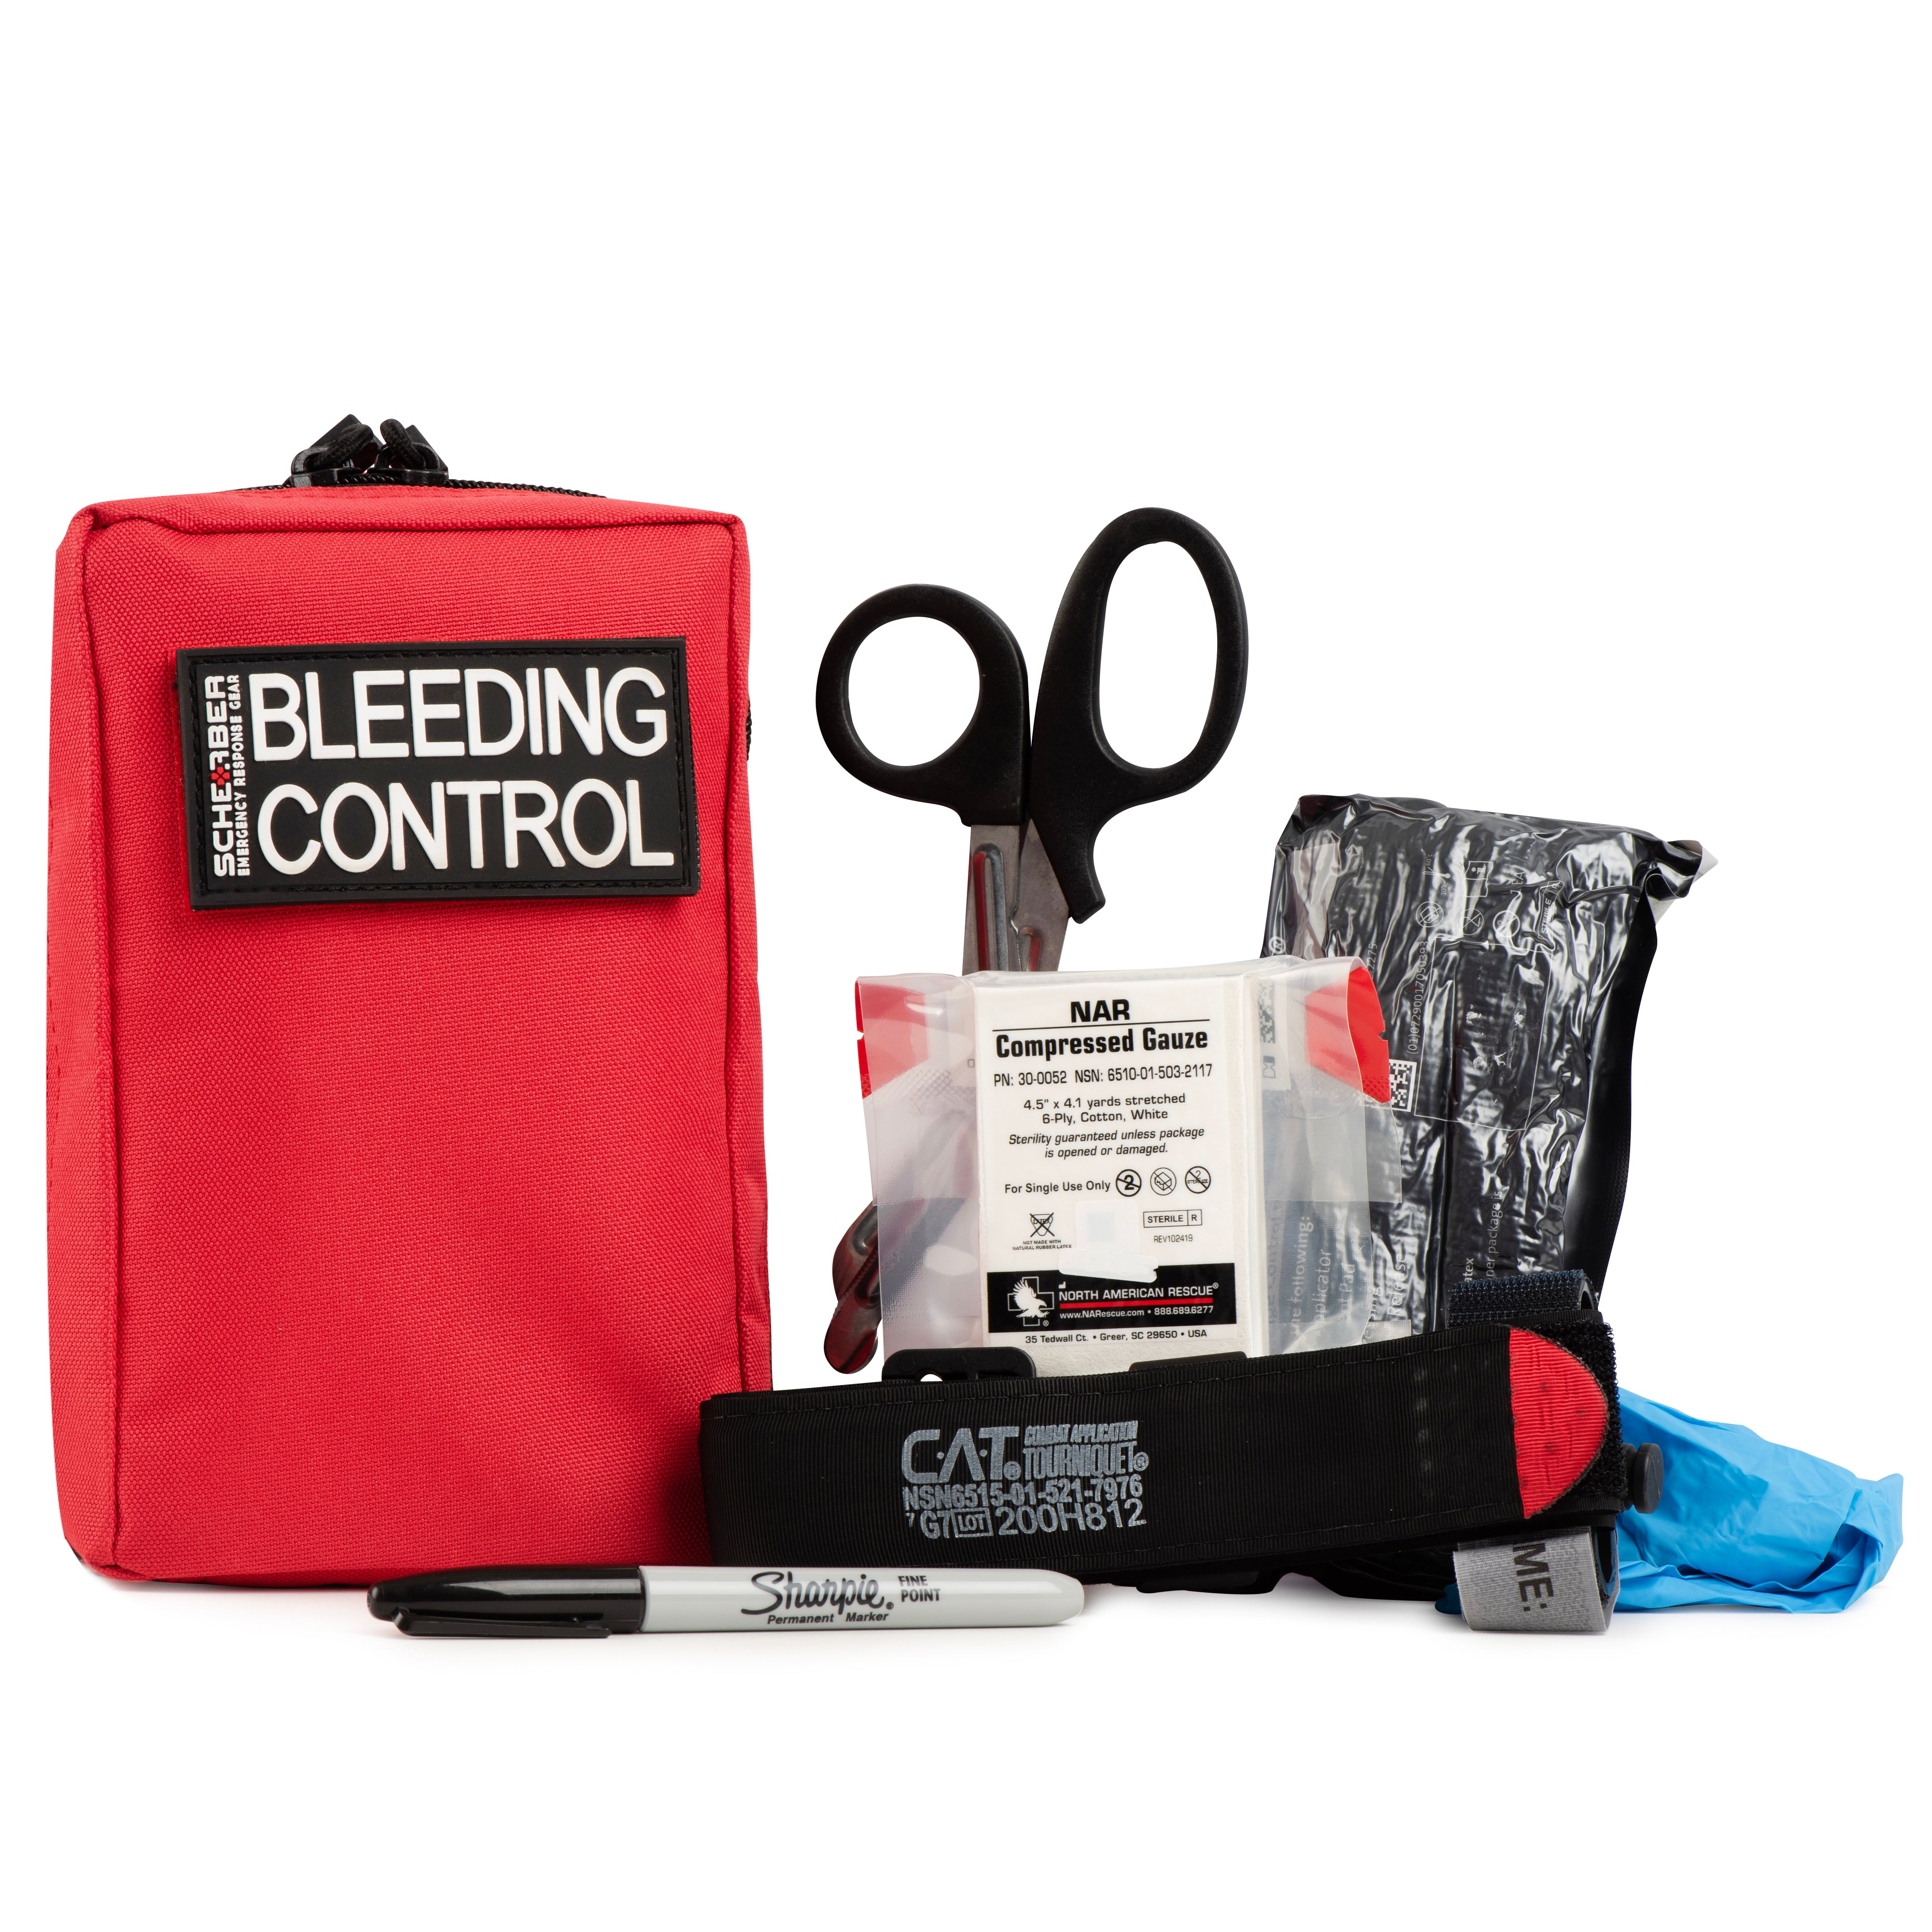 Scherber Public Access Bleeding Control Kit | Trauma Equipment, First Aid Supplies & Nar Tourniquet Pack for Gunshot Wound & Hemorrhage | Medical